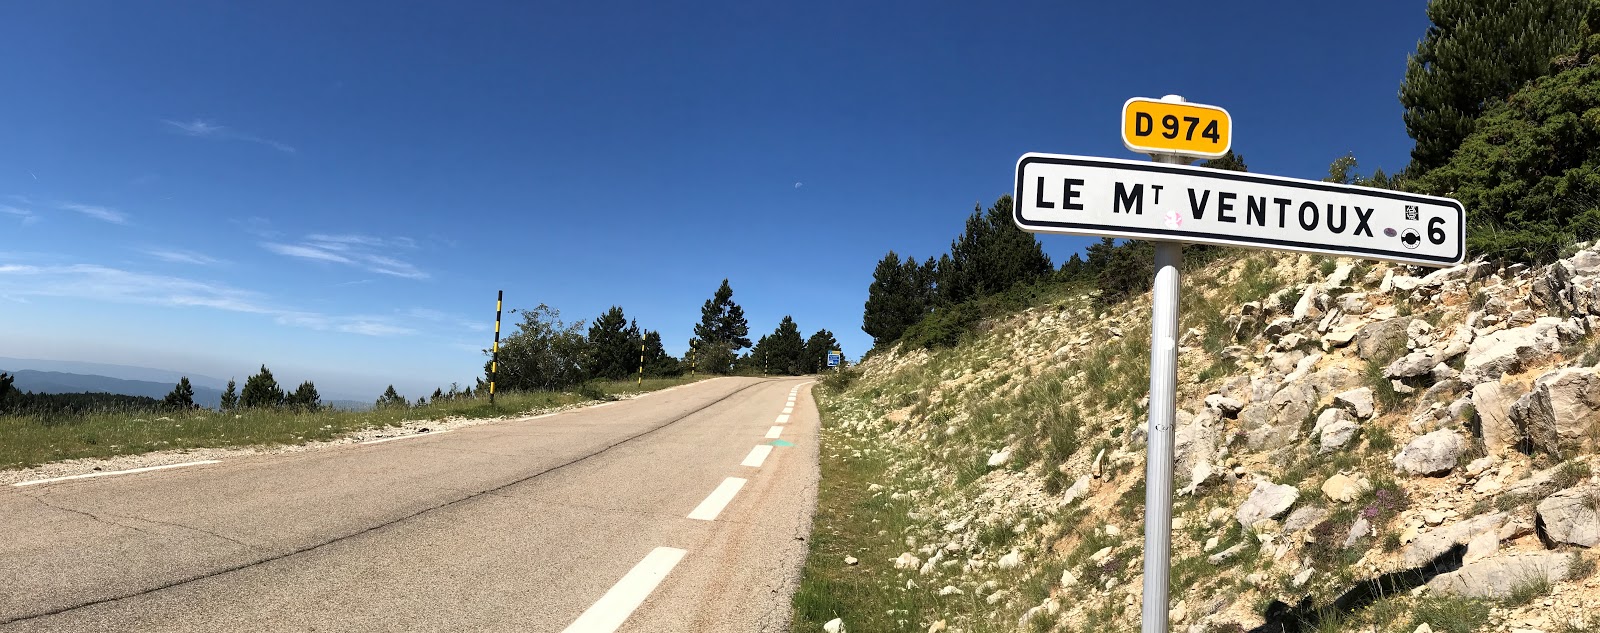 Tour de France 2022 - roadisgn for Mont Ventoux